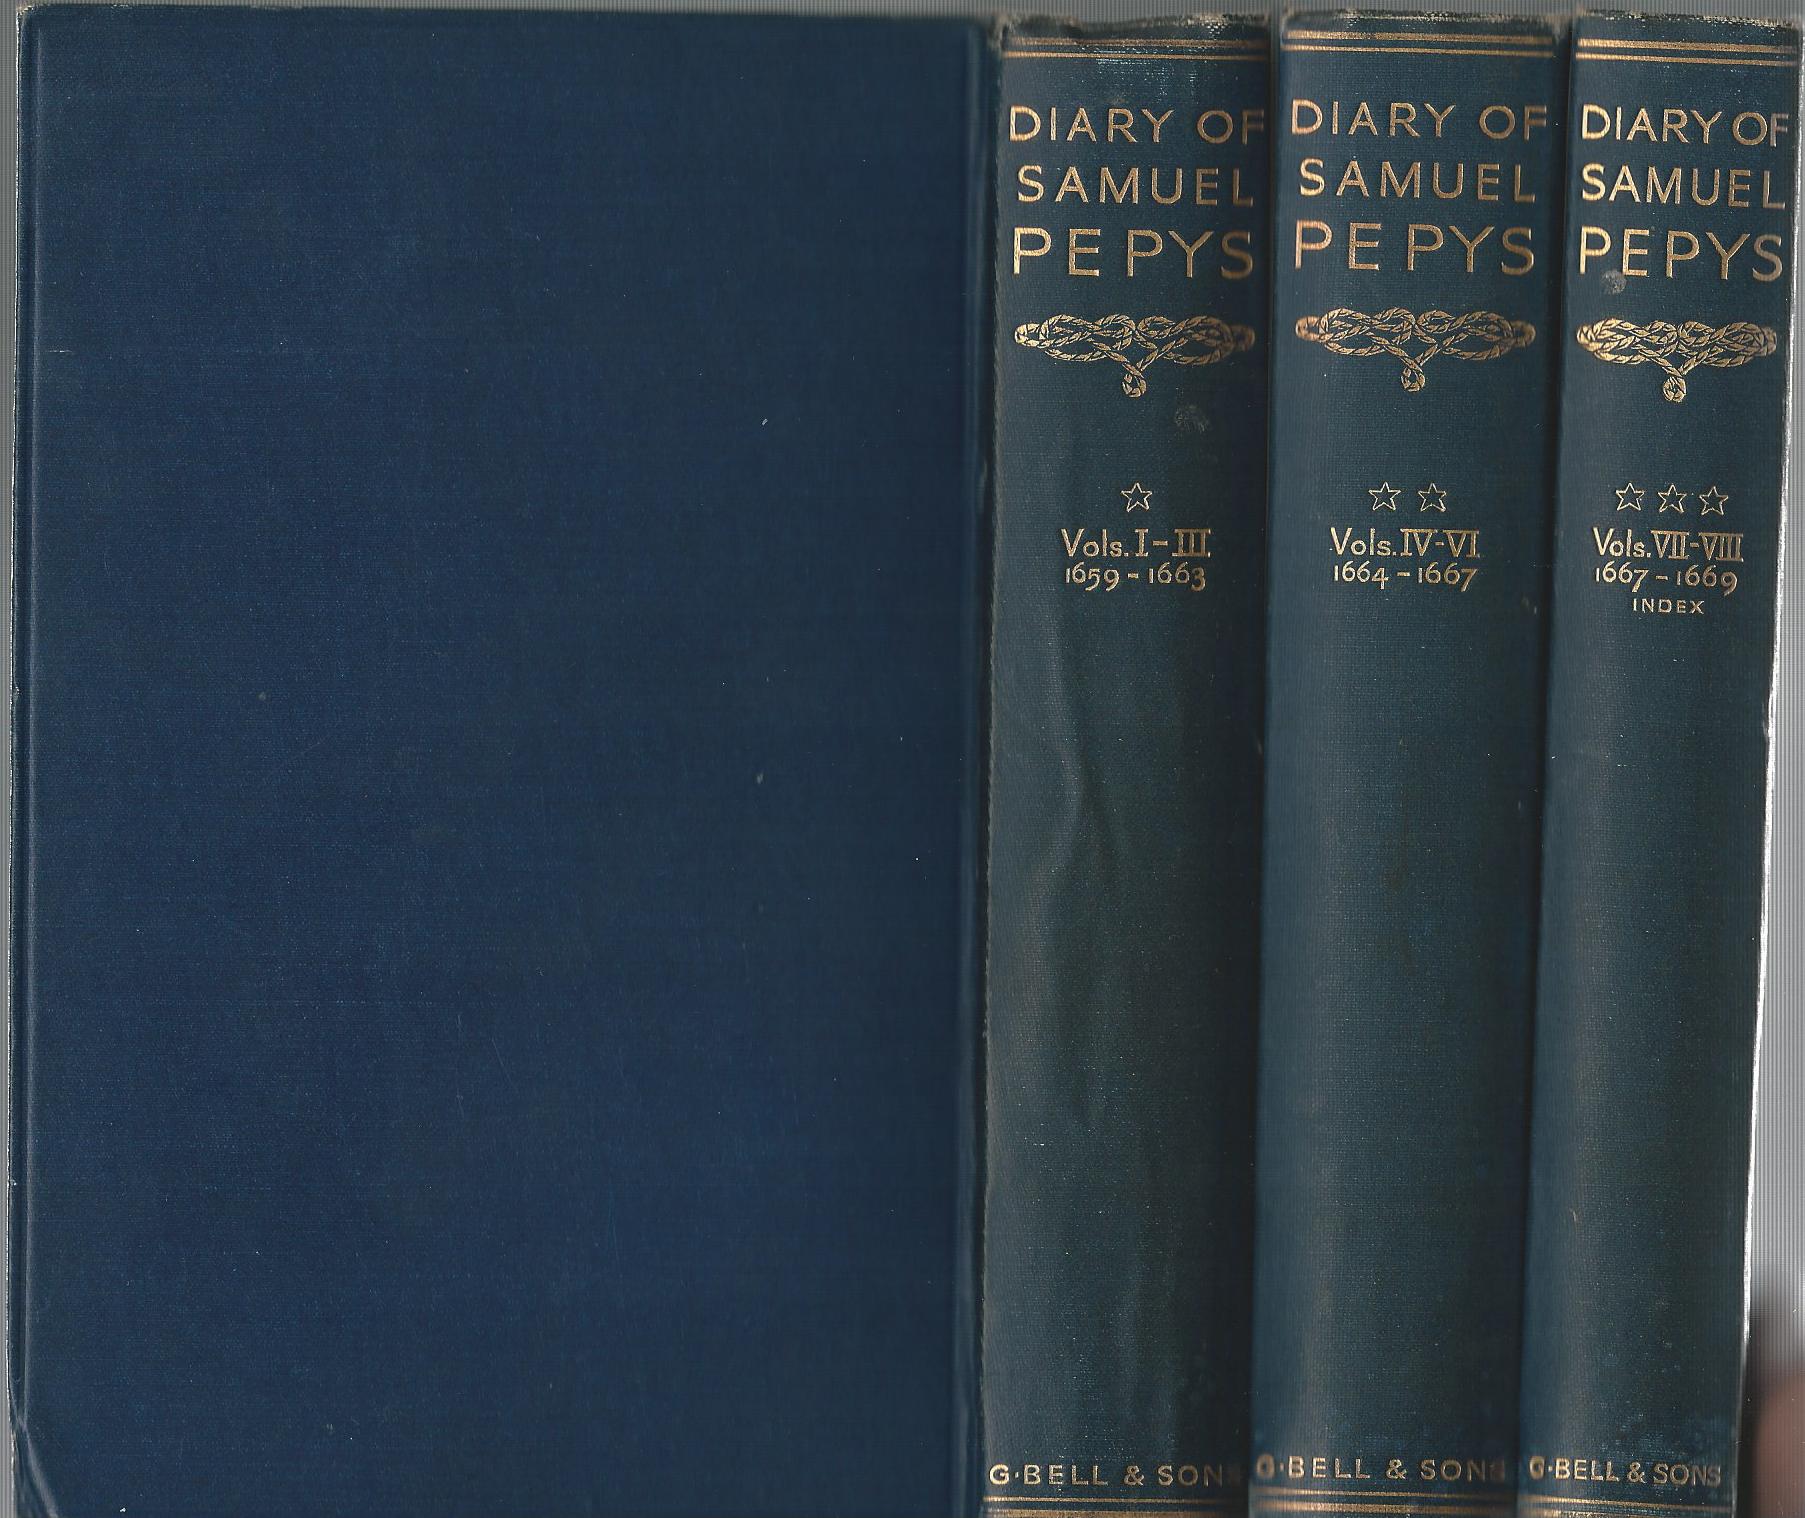 the diary of samuel pepys